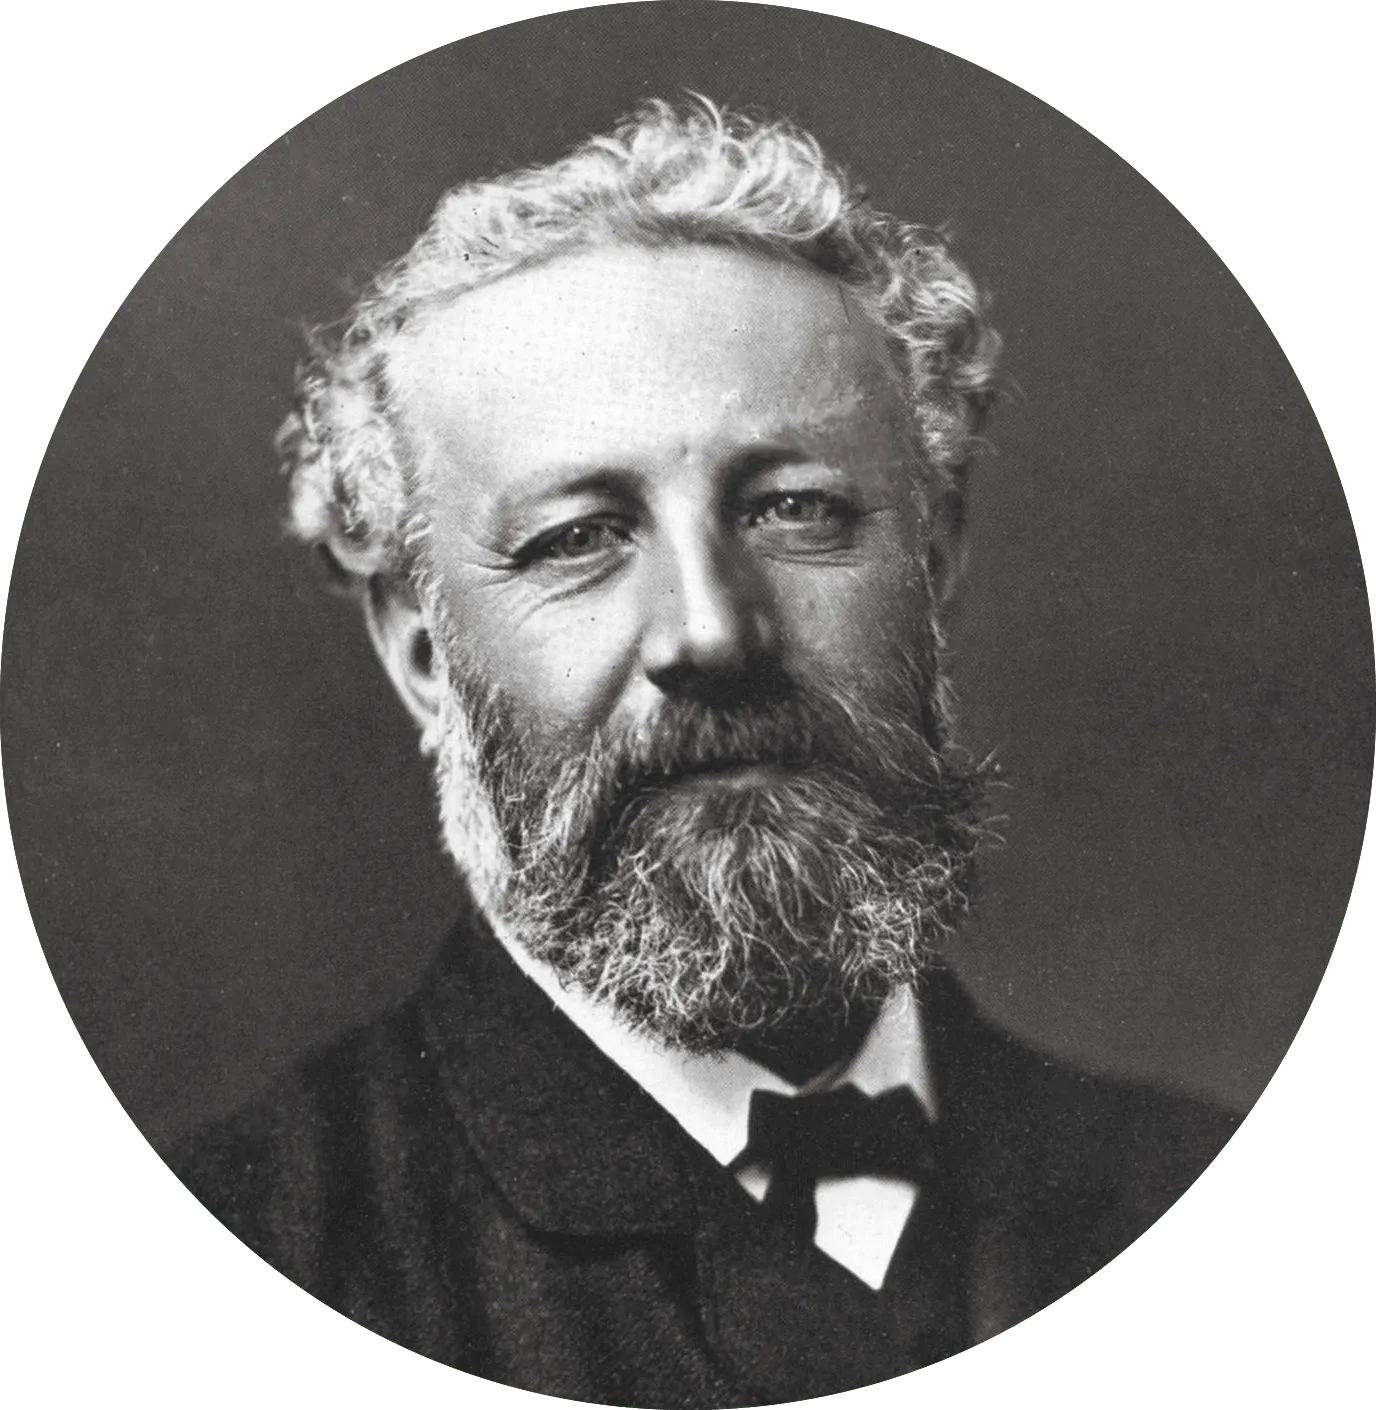 Jules Verne
(1828-1905)